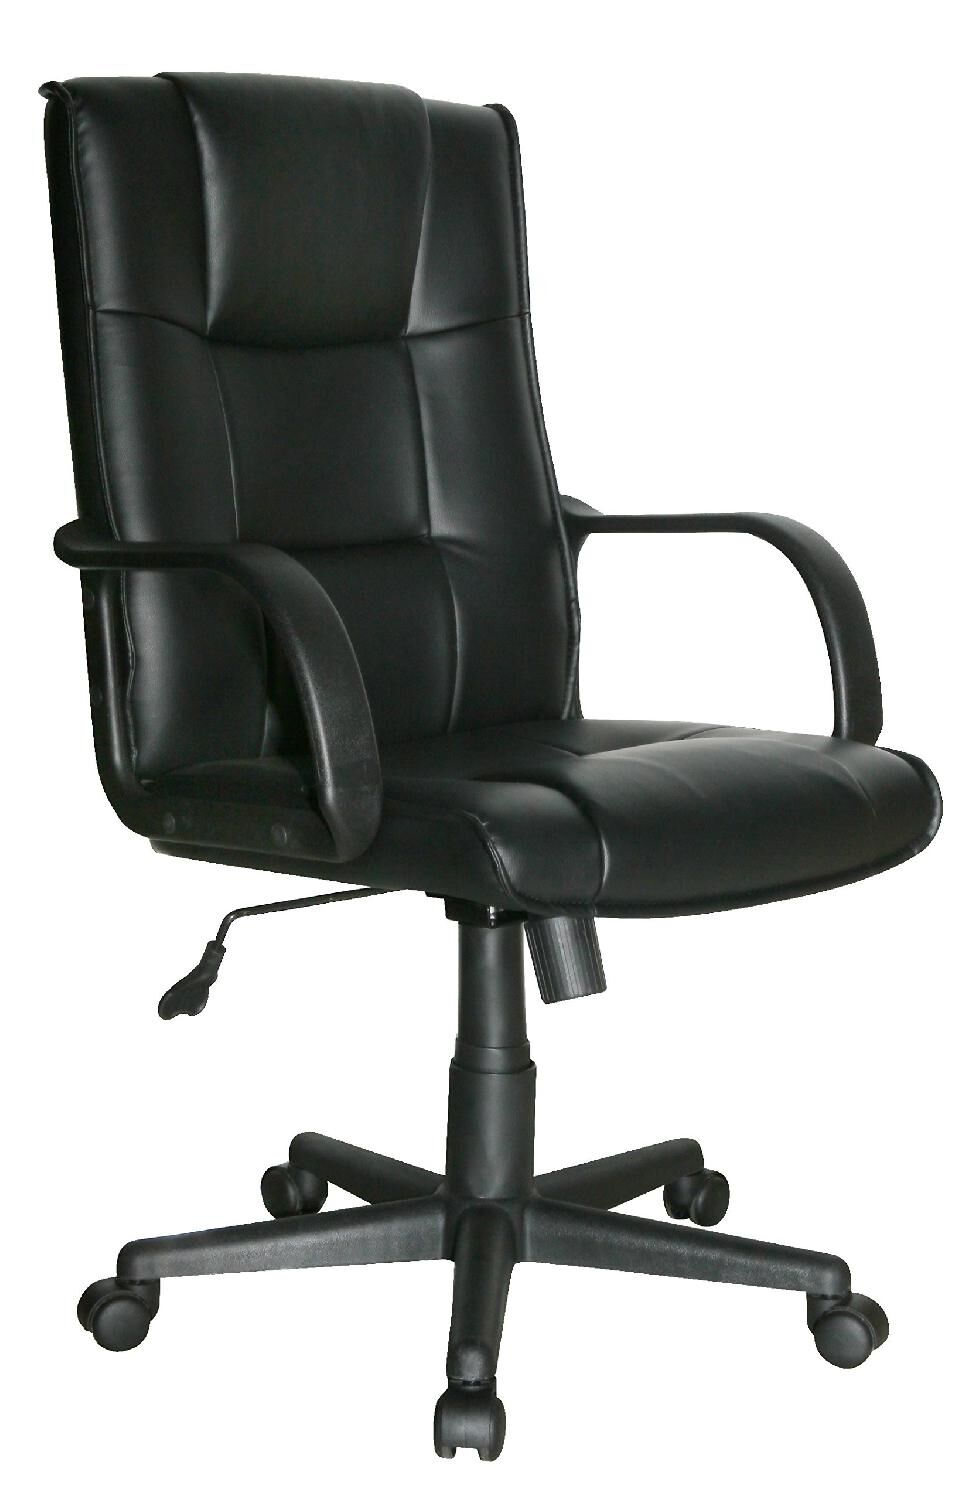 nbrand 1421 sedia ergonomica ufficio sedia da scrivania operativa con rotelle e braccioli girevole e regolabile in altezza colore nero - 1421